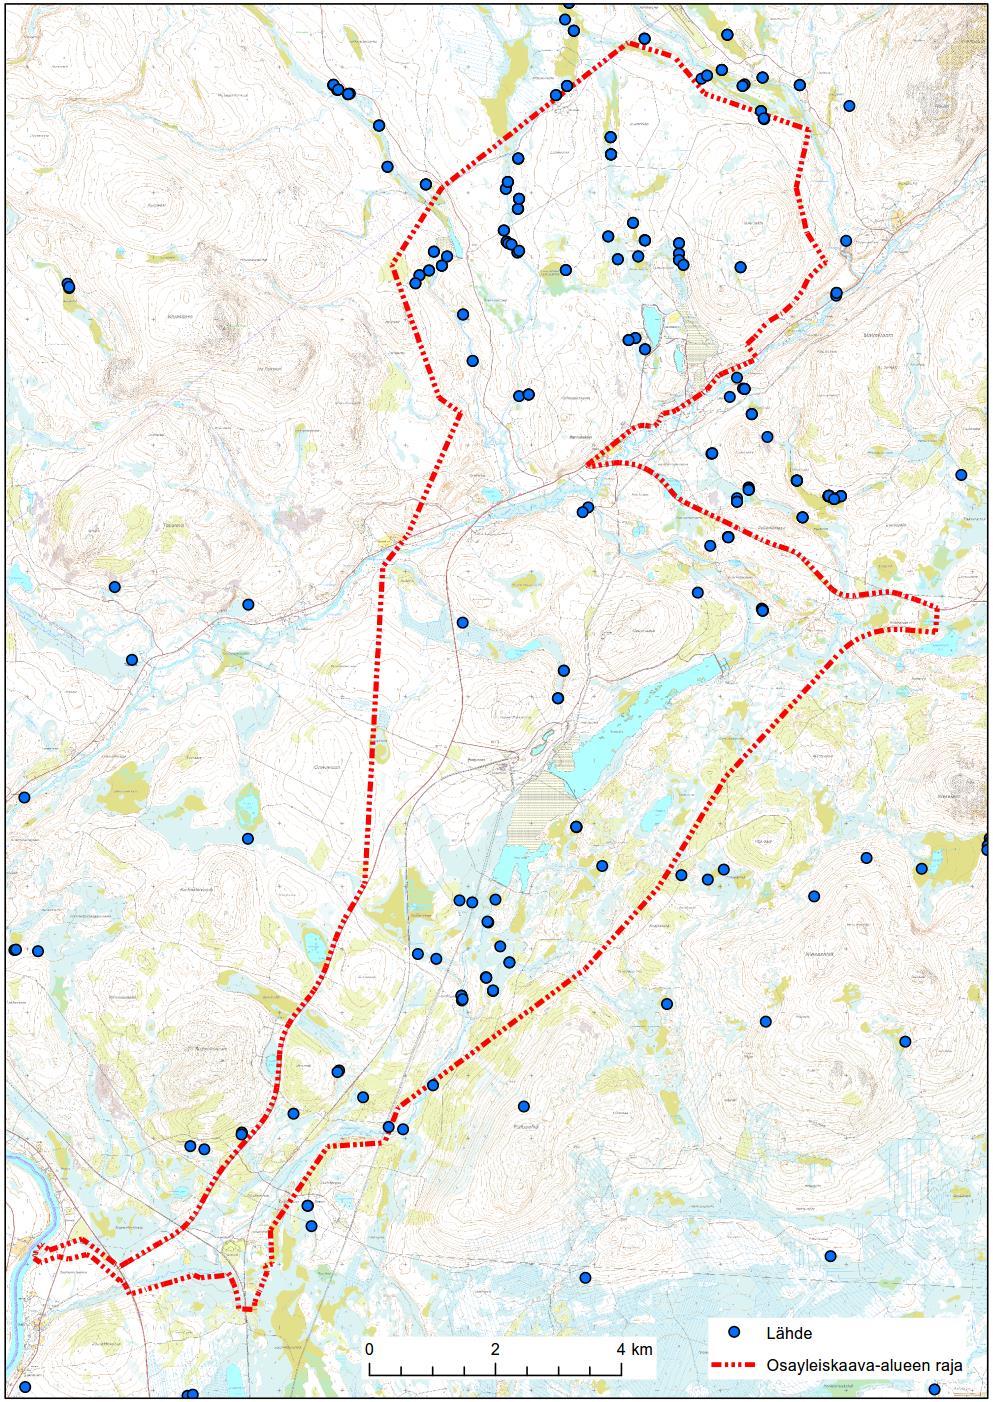 Pohjaveden laatua alueella on selvitetty Hannukaisessa 34 pohjavesiputkesta sekä kolmesta kaivosta. Raskasmetallipitoisuudet jäivät useimmiten määritysrajan alle.